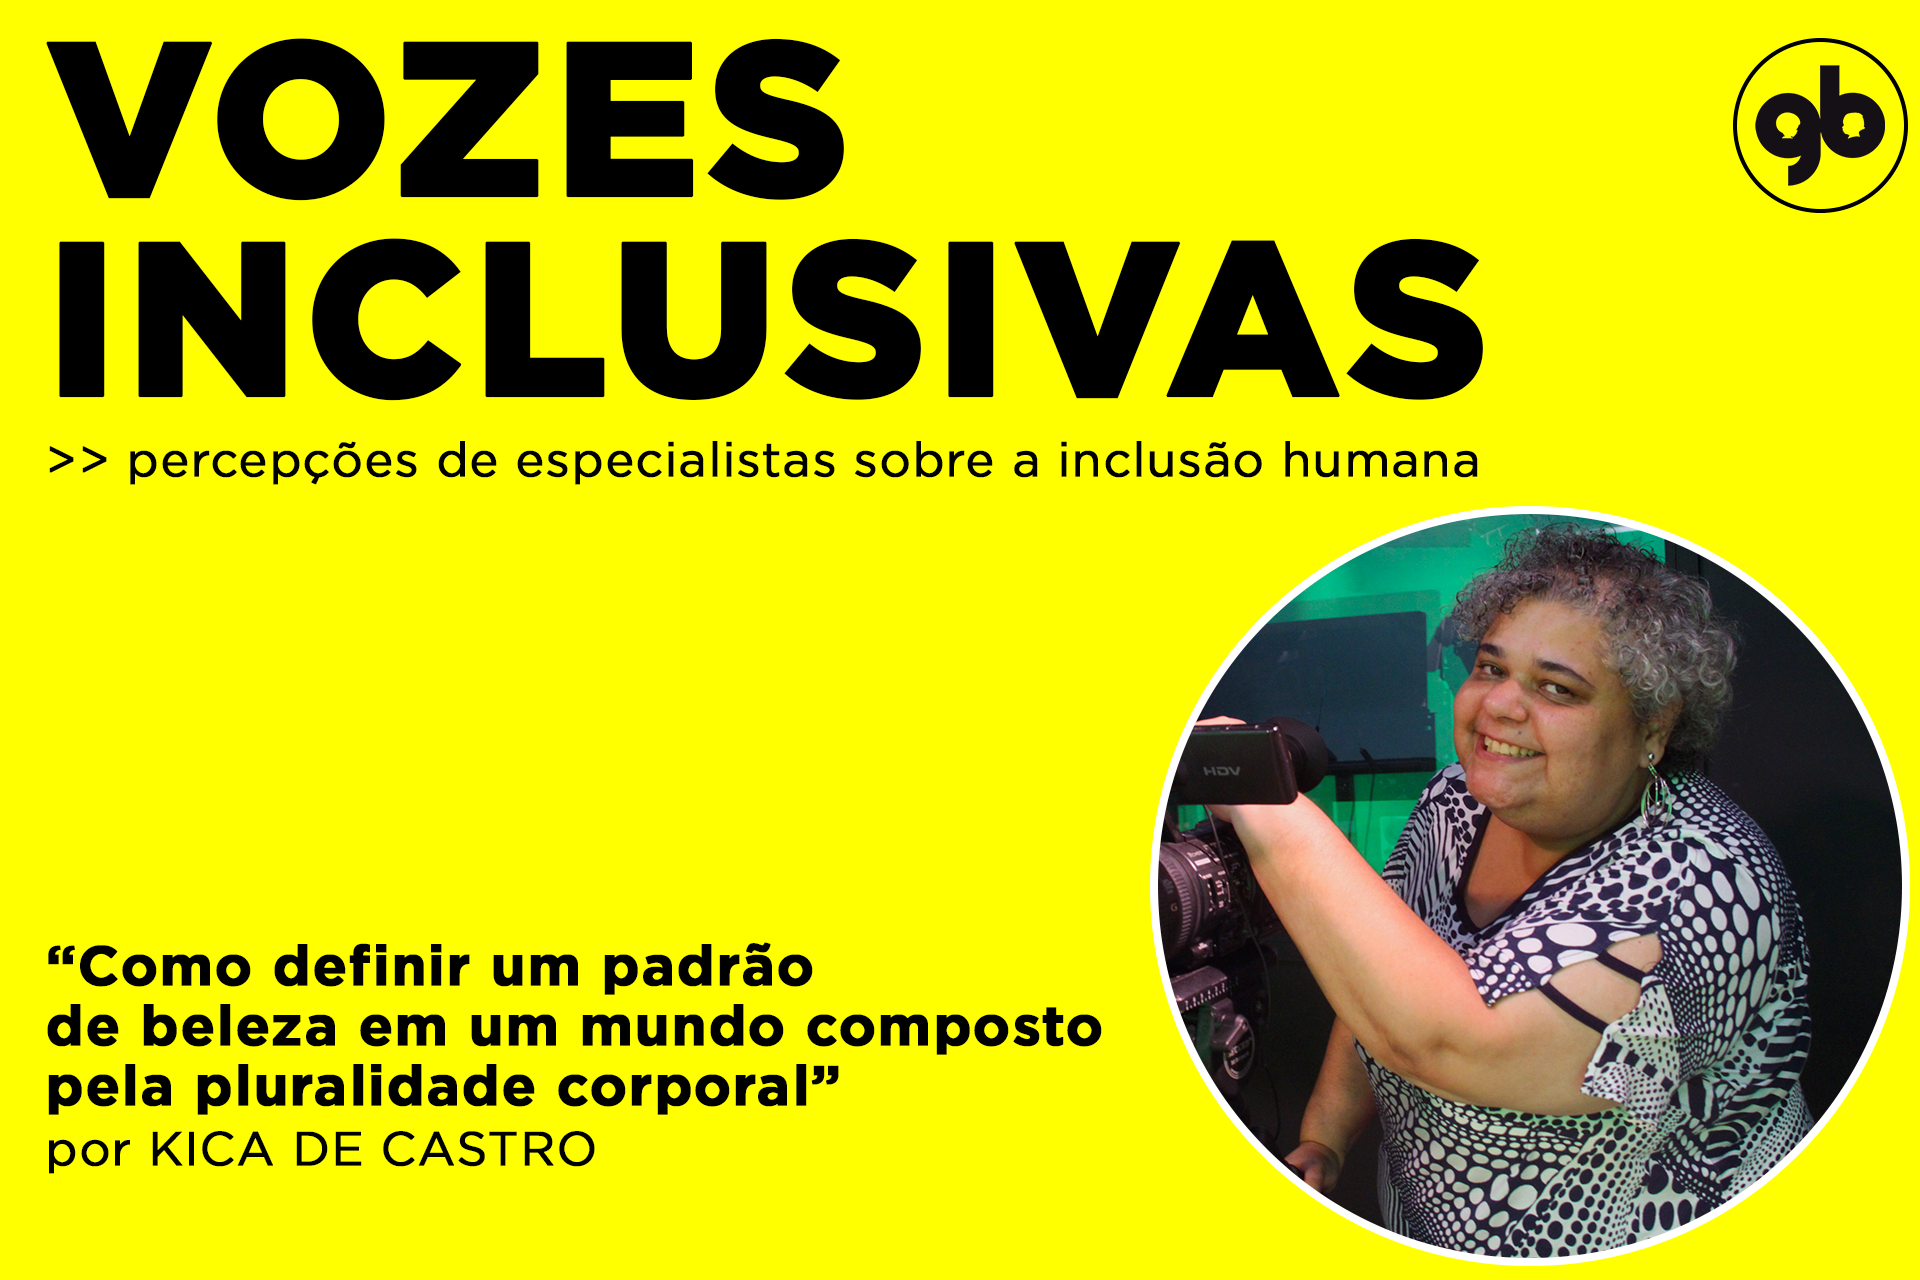 sobre fundo amarelo, título Vozes inclusivas em preto com foto circular de Kica ao lado direito